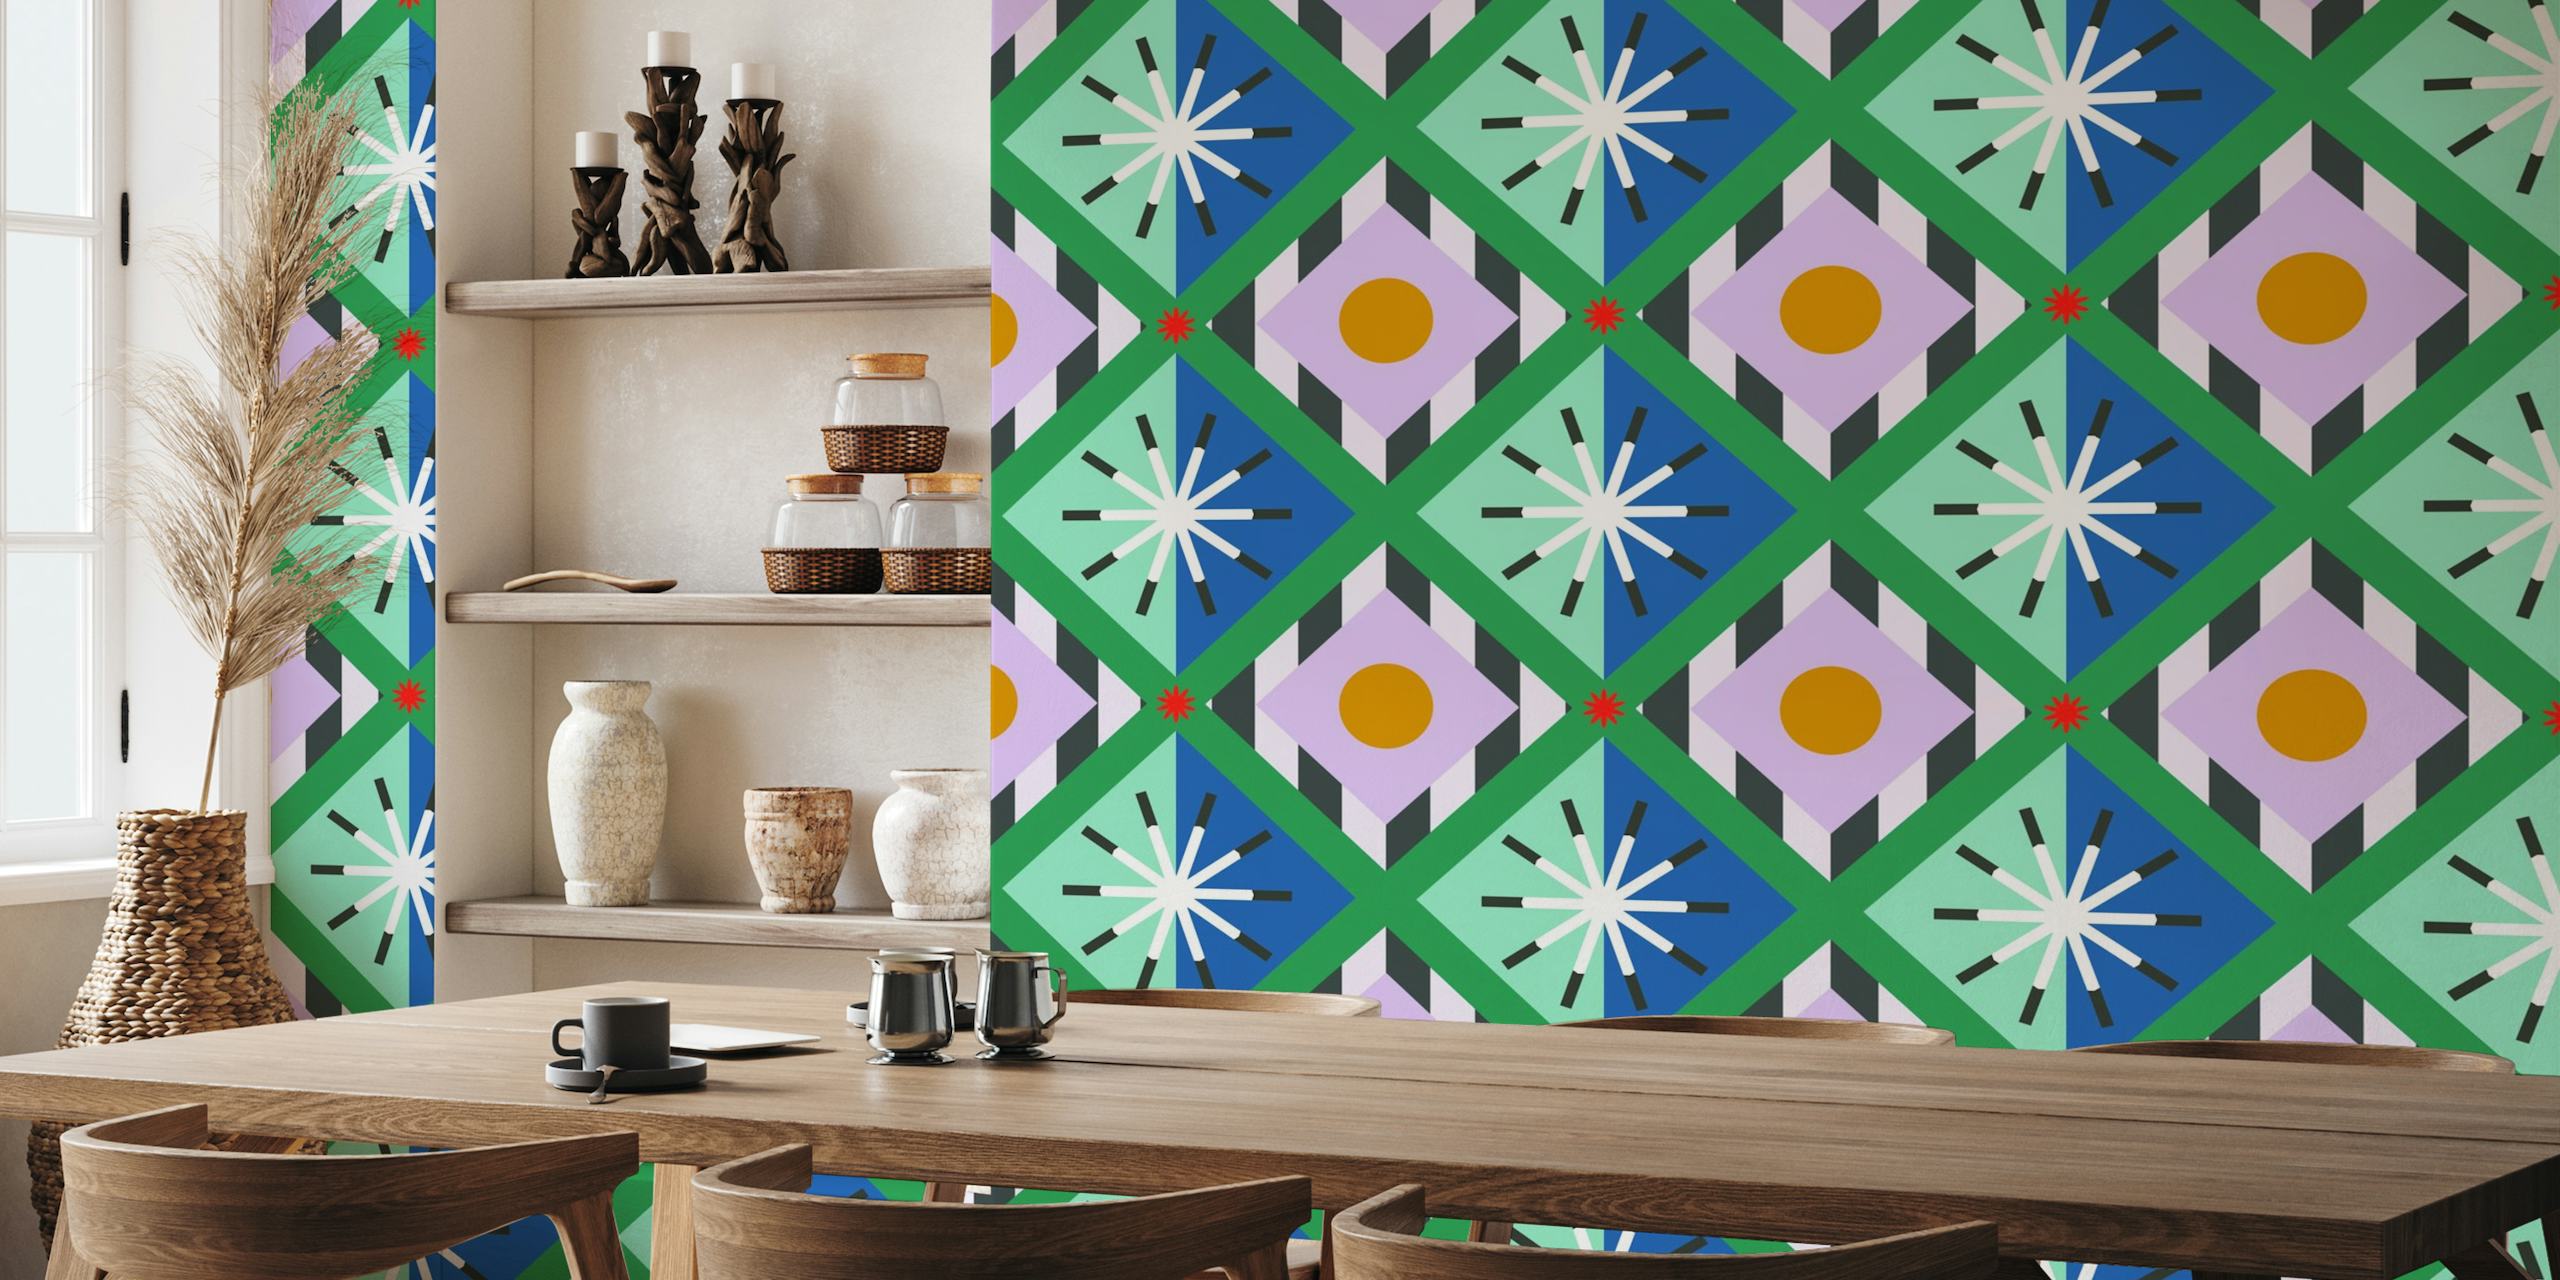 Neue Tapete im Memphis-Stil mit kräftigen geometrischen Formen in Pastellfarben